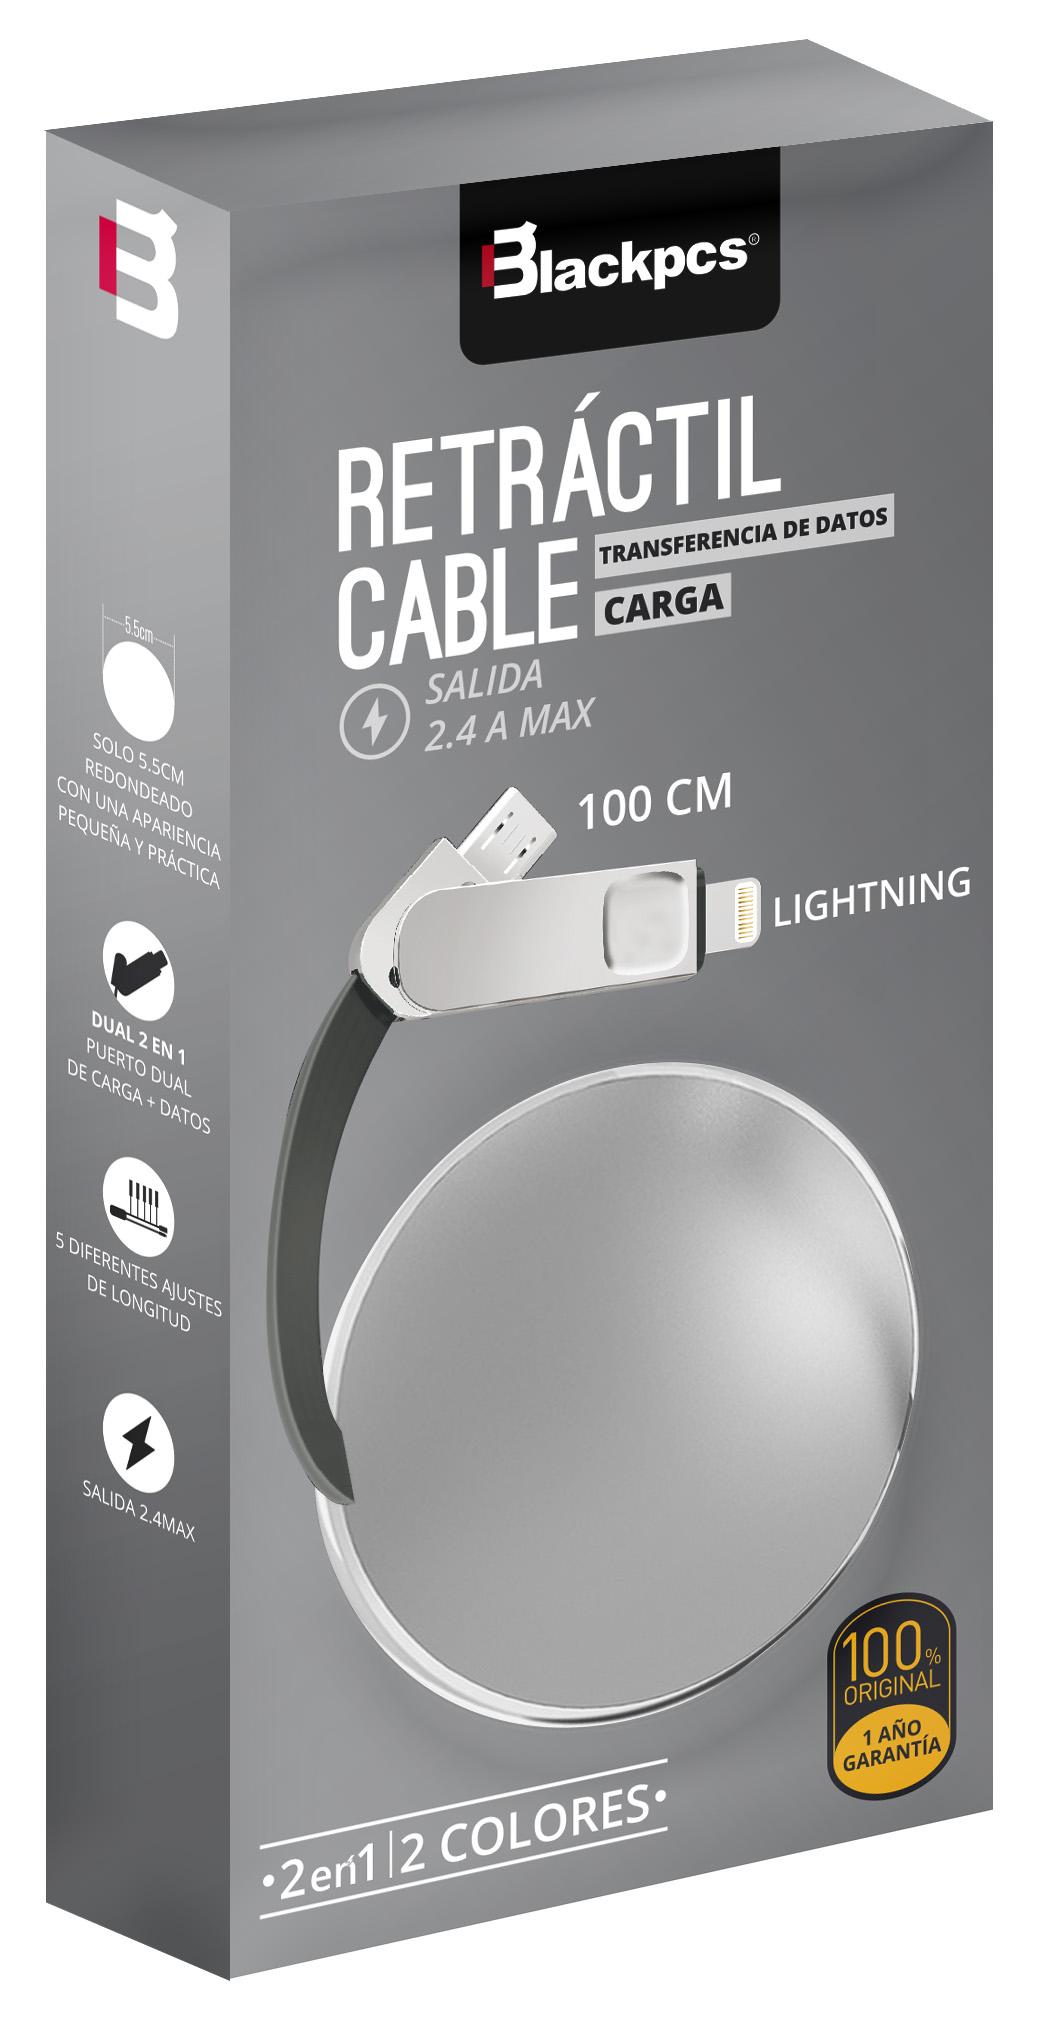  Ob  Cable Blackpcs  Ca Retractil  V8 Lightning Plata 100 Cm 2 1A  Casmlpr  - CASMLPR-3